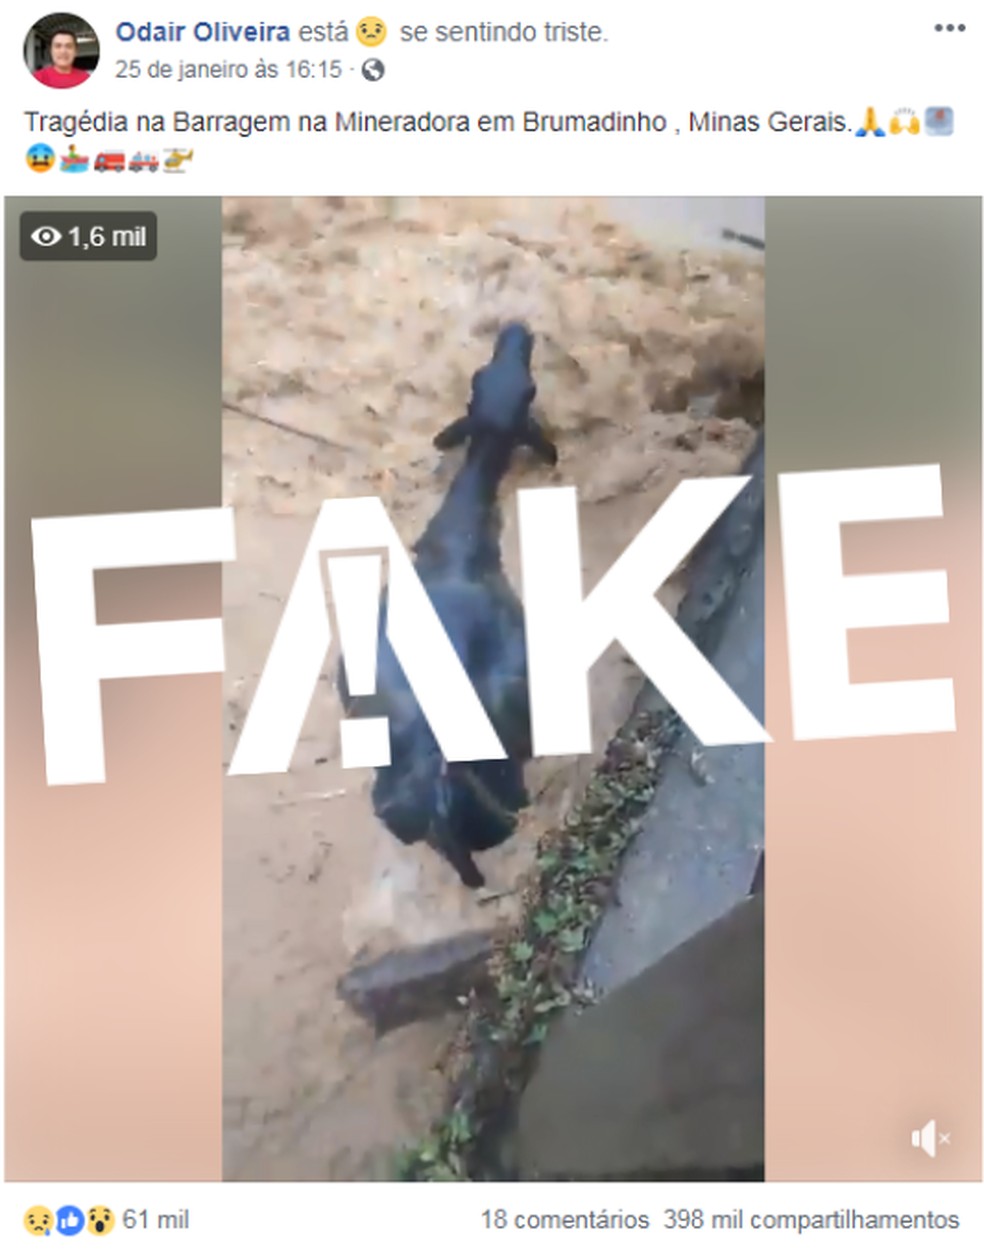 Vídeo tem circulado como se fosse em Brumadinho — Foto: Reprodução/Facebook